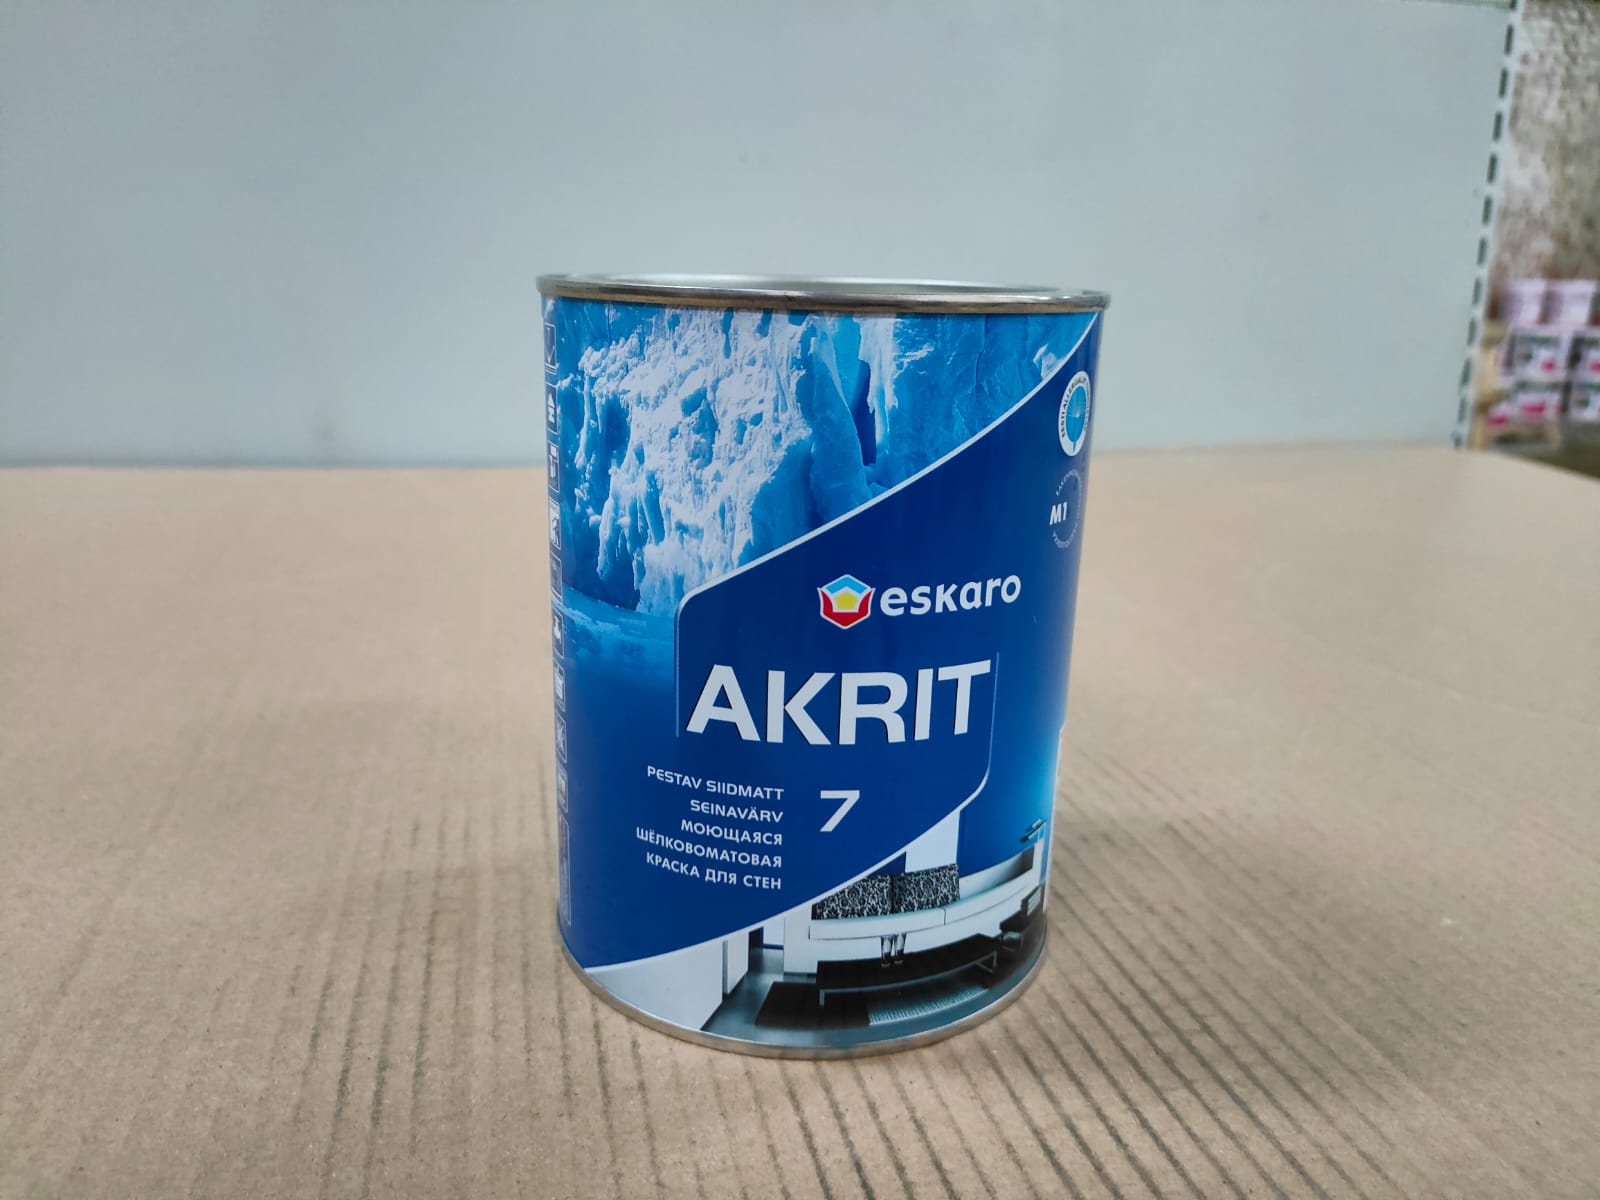 Моющаяся шелковоматовая краска для стен Eskaro Akrit 7 (База А - белая) 0,95 л								